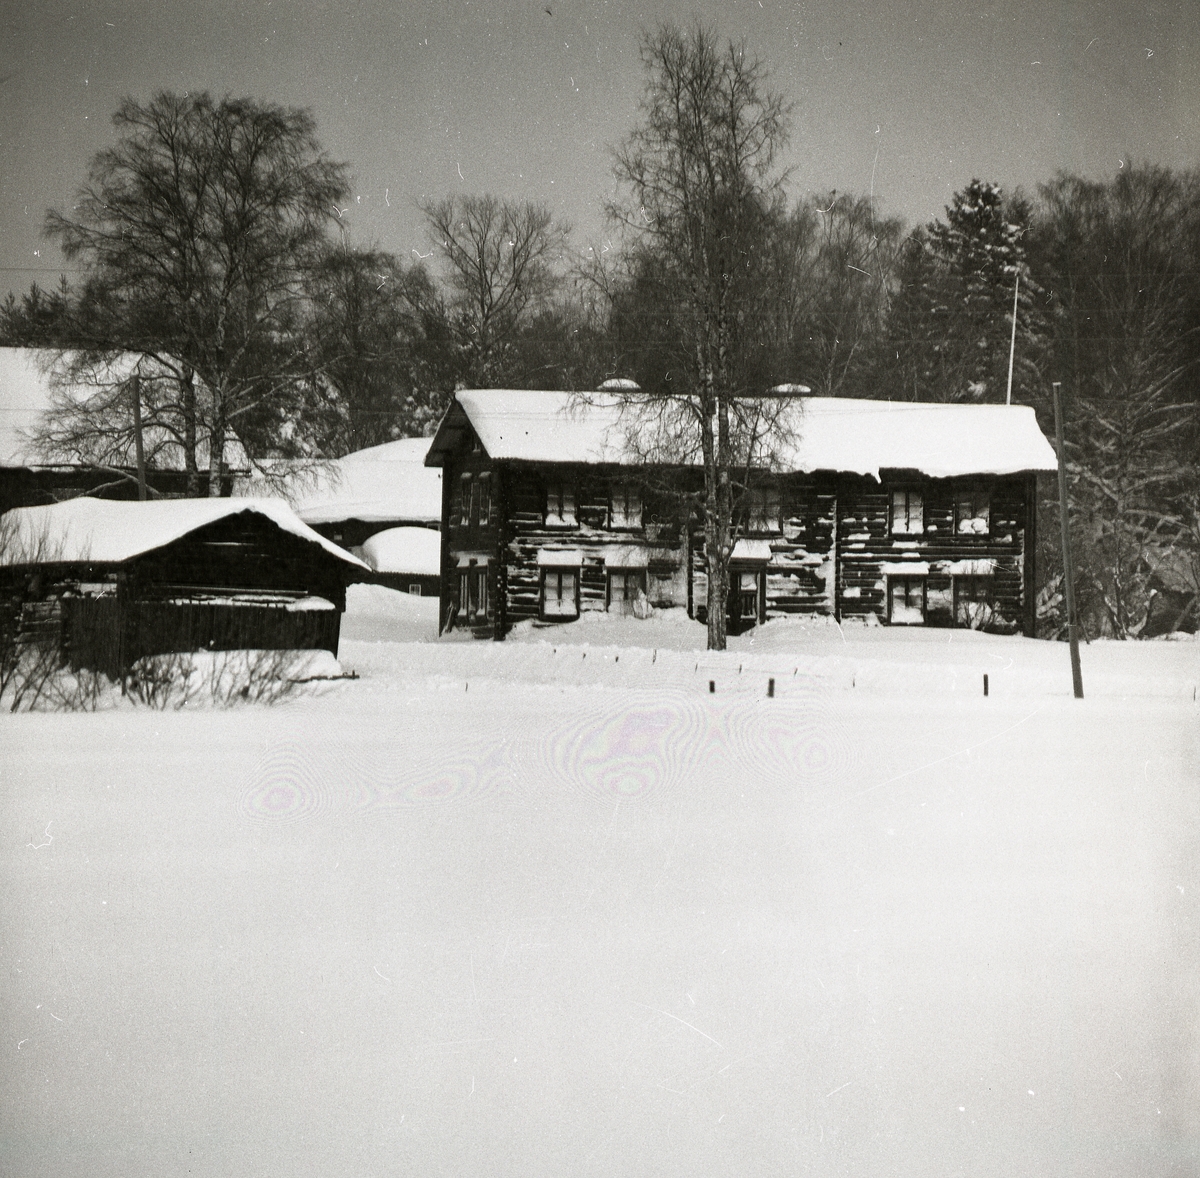 Bostadshusets snöiga yttre vittnar om en stormig vinter i Glössbo 1981. Varenda fönsterglugg är täckt av snö, taket är belamrat av en tungt snölager och snövallen längs husväggen sträcker sig upp till nedersta fönsterraden. Snön ligger orörd på åkermarken framför huset. Ladorna på gården bär lika mycket snö som bostadshuset, de enda som klarat sig från snöns tyngd är träden på gården som stolt står med bara grenar.